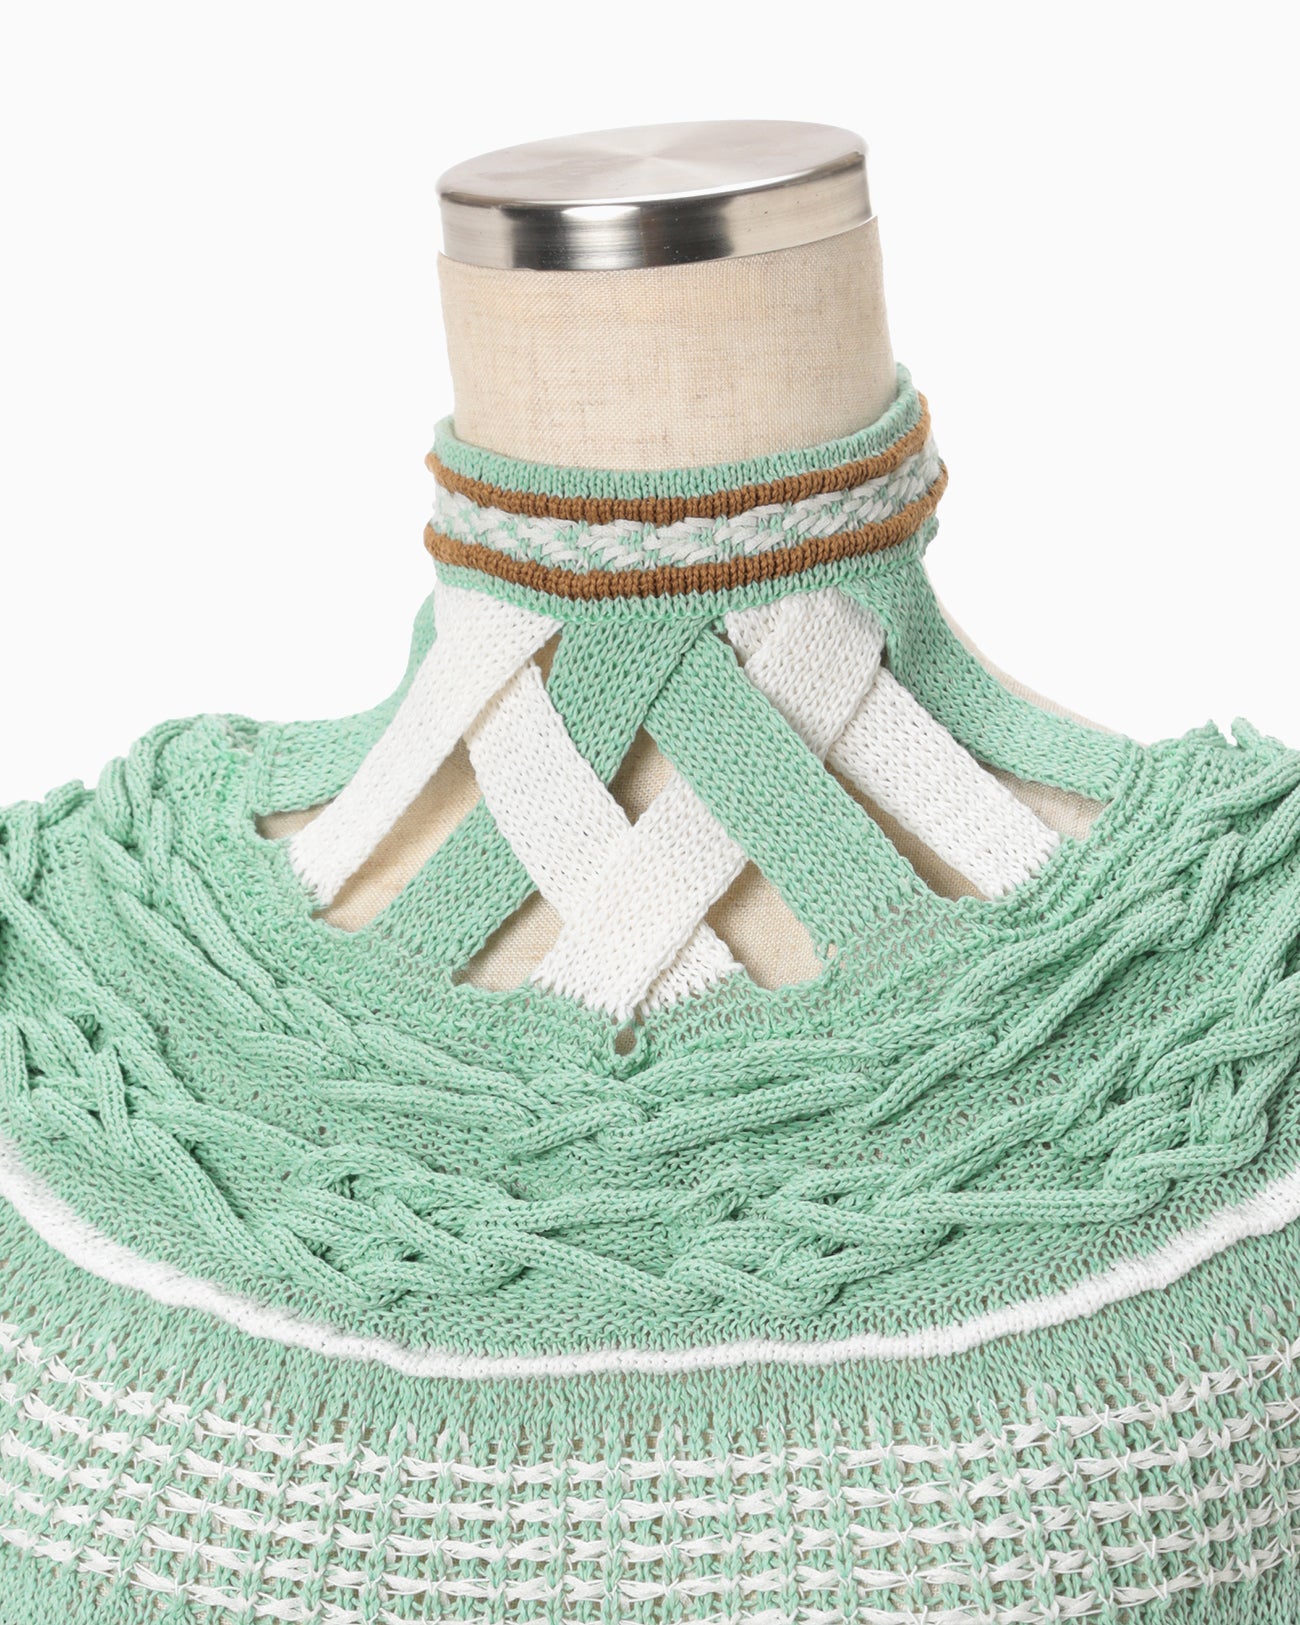 Bamboo Basket Pattern Knitted Dress - mint green - Mame Kurogouchi